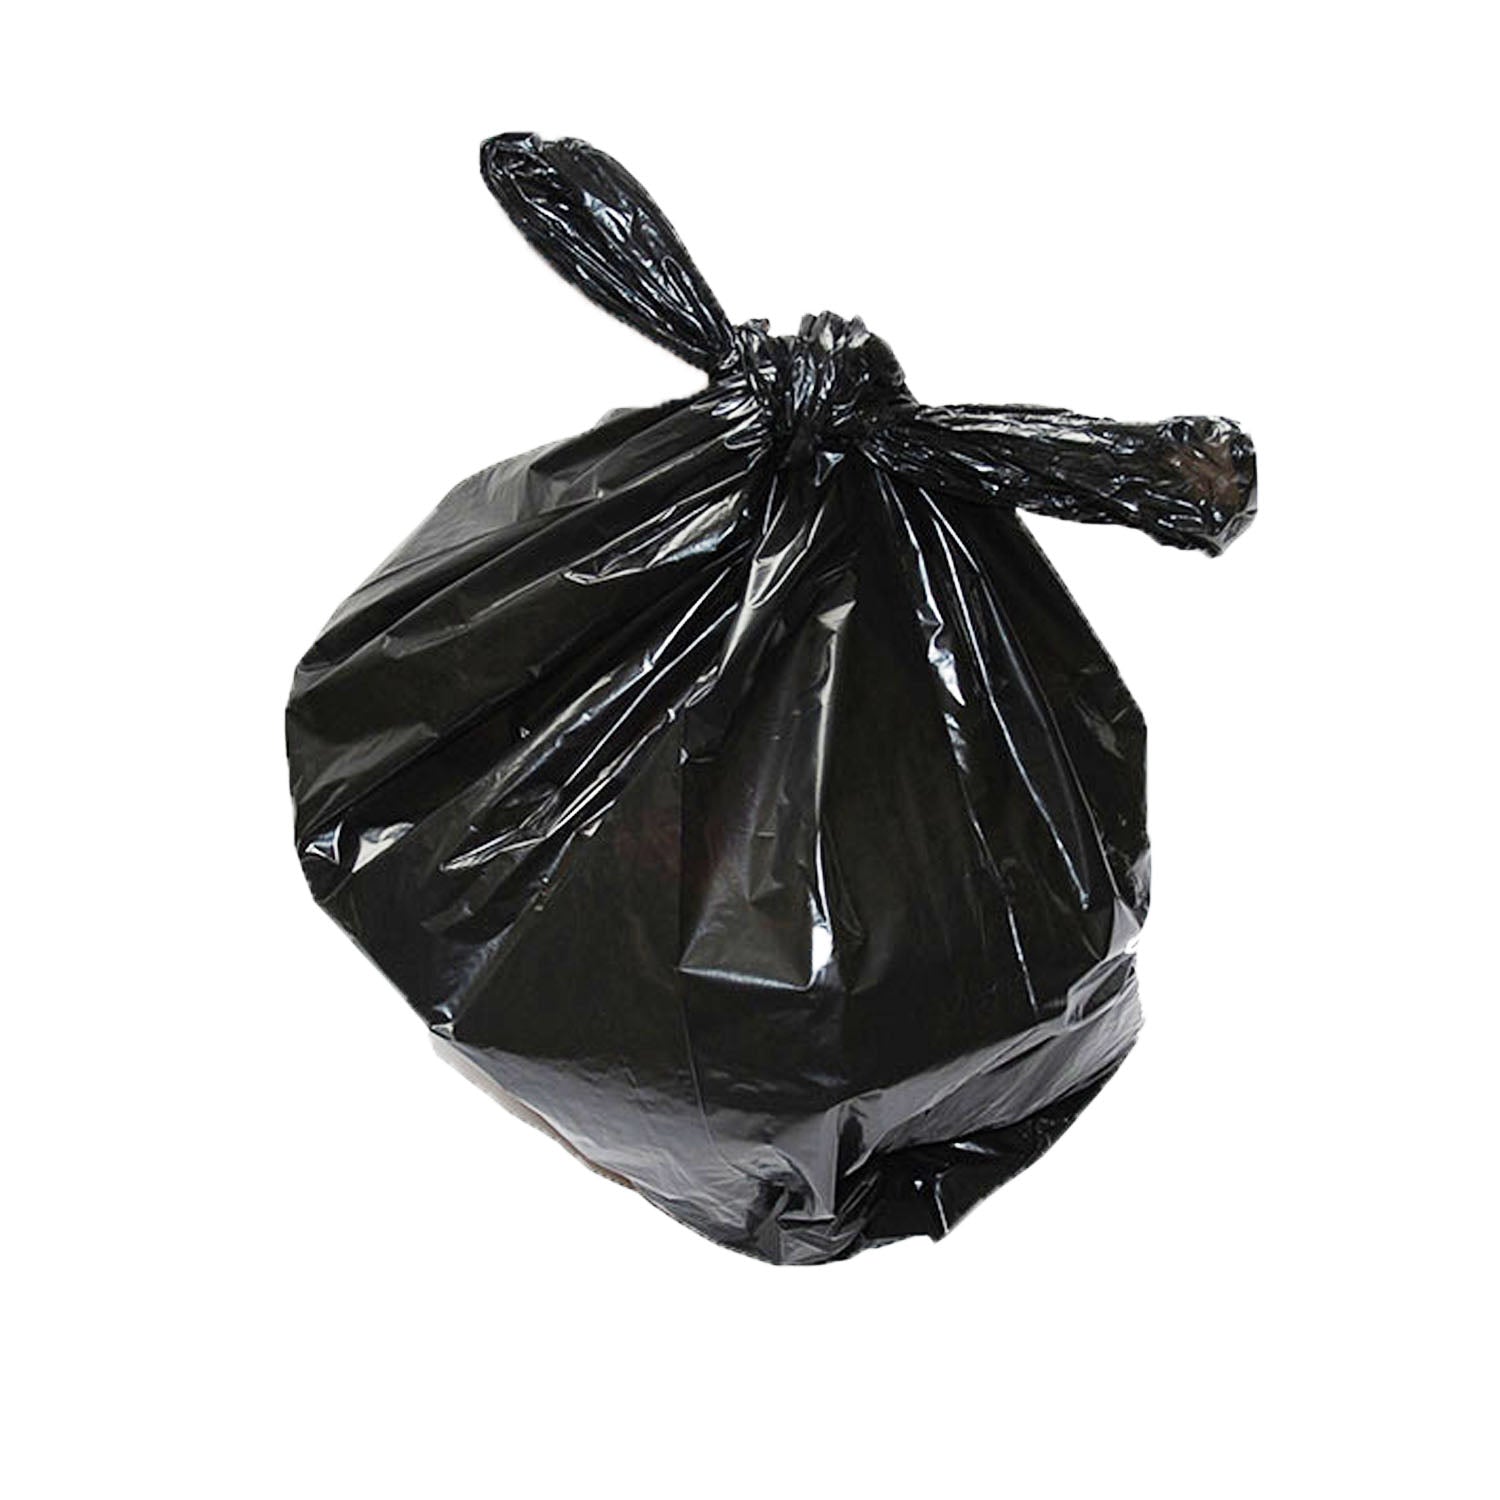 Recycled Refuse Sacks Wheelie Bin 240ltr - Black - 100pk (USTR003)